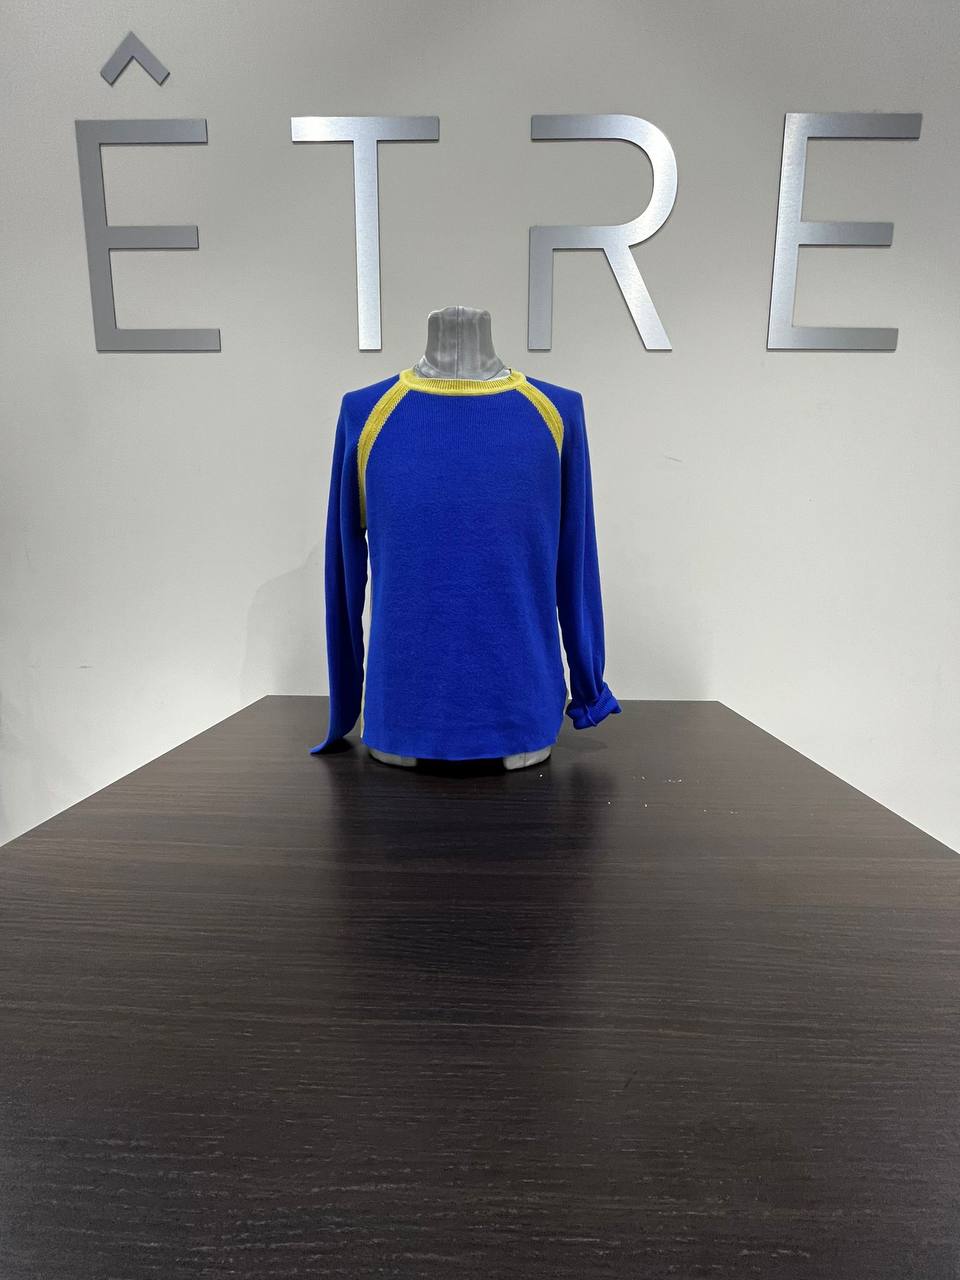 Итальянская одежда, бренд ETRE, арт. 73225822